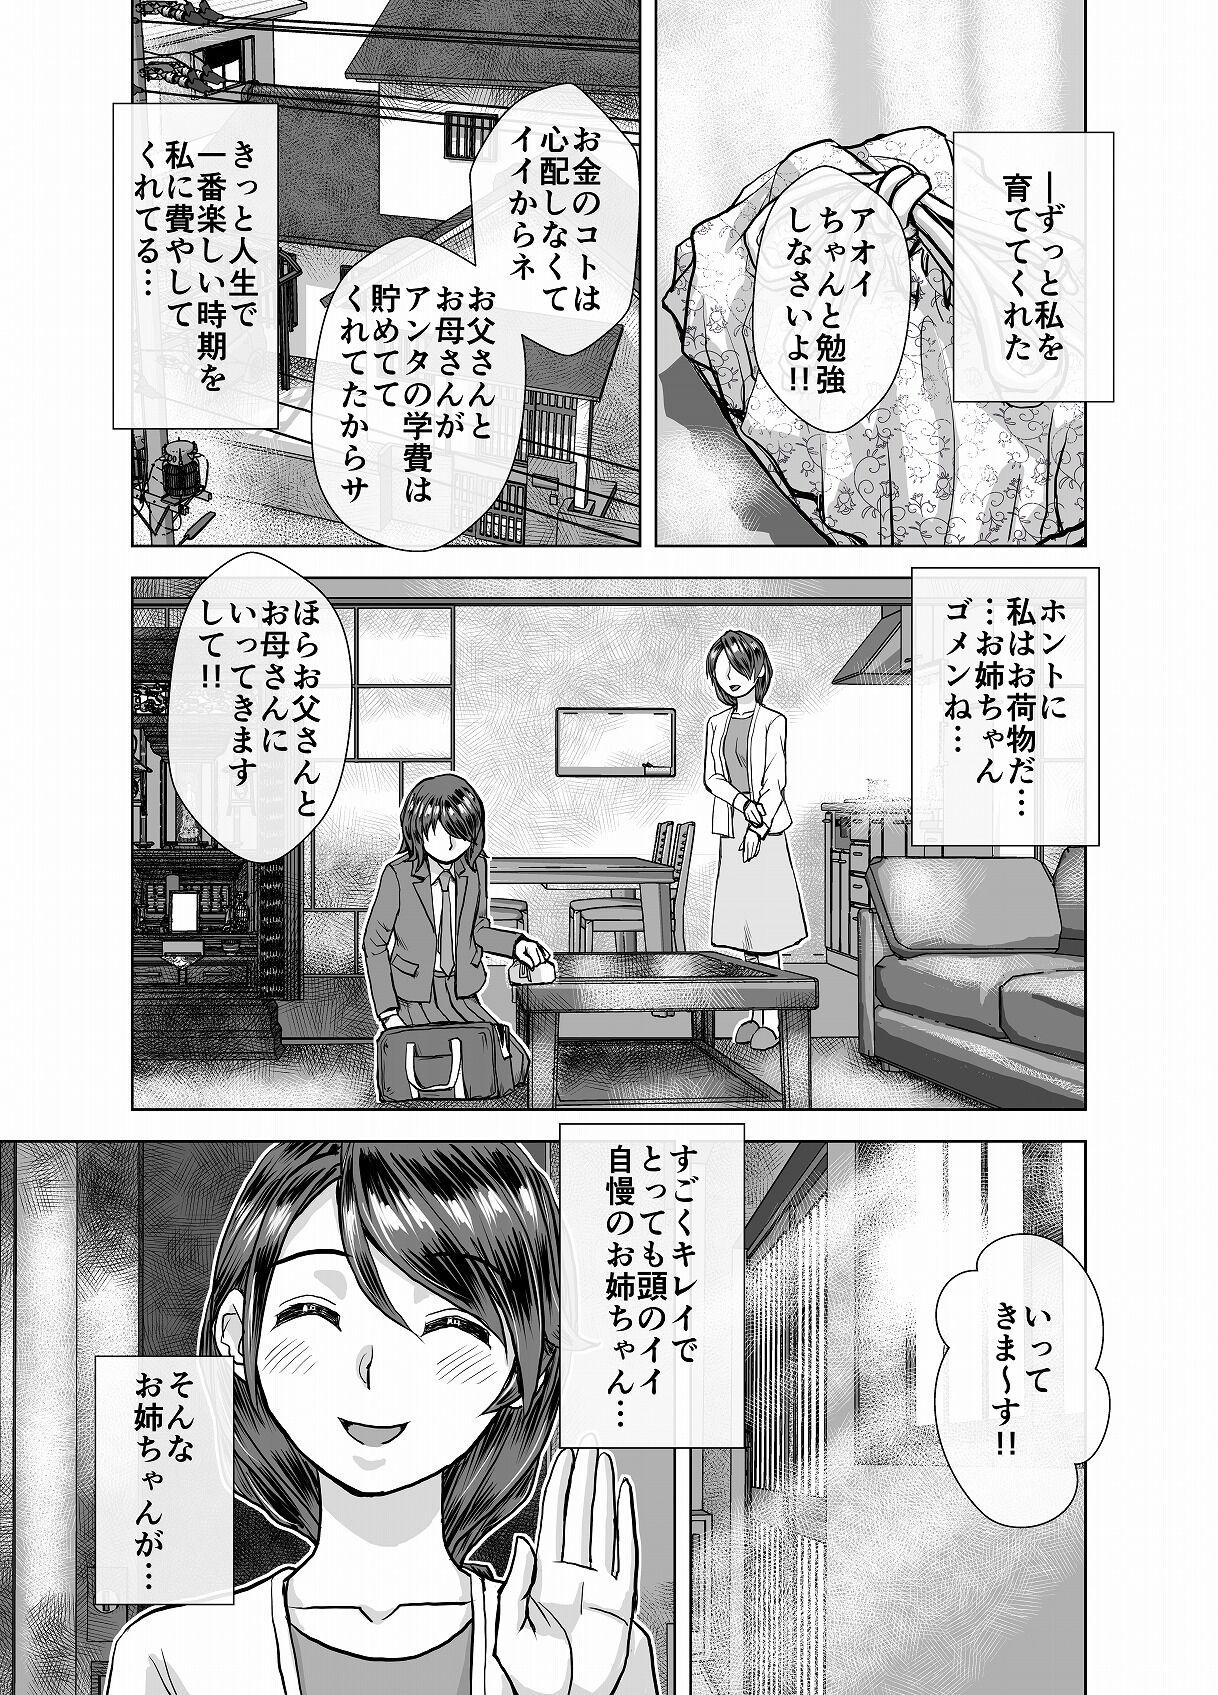 Emo BEYOND ~ Aisubeki Kanata no Hitobito 4 - Original Brasil - Page 7